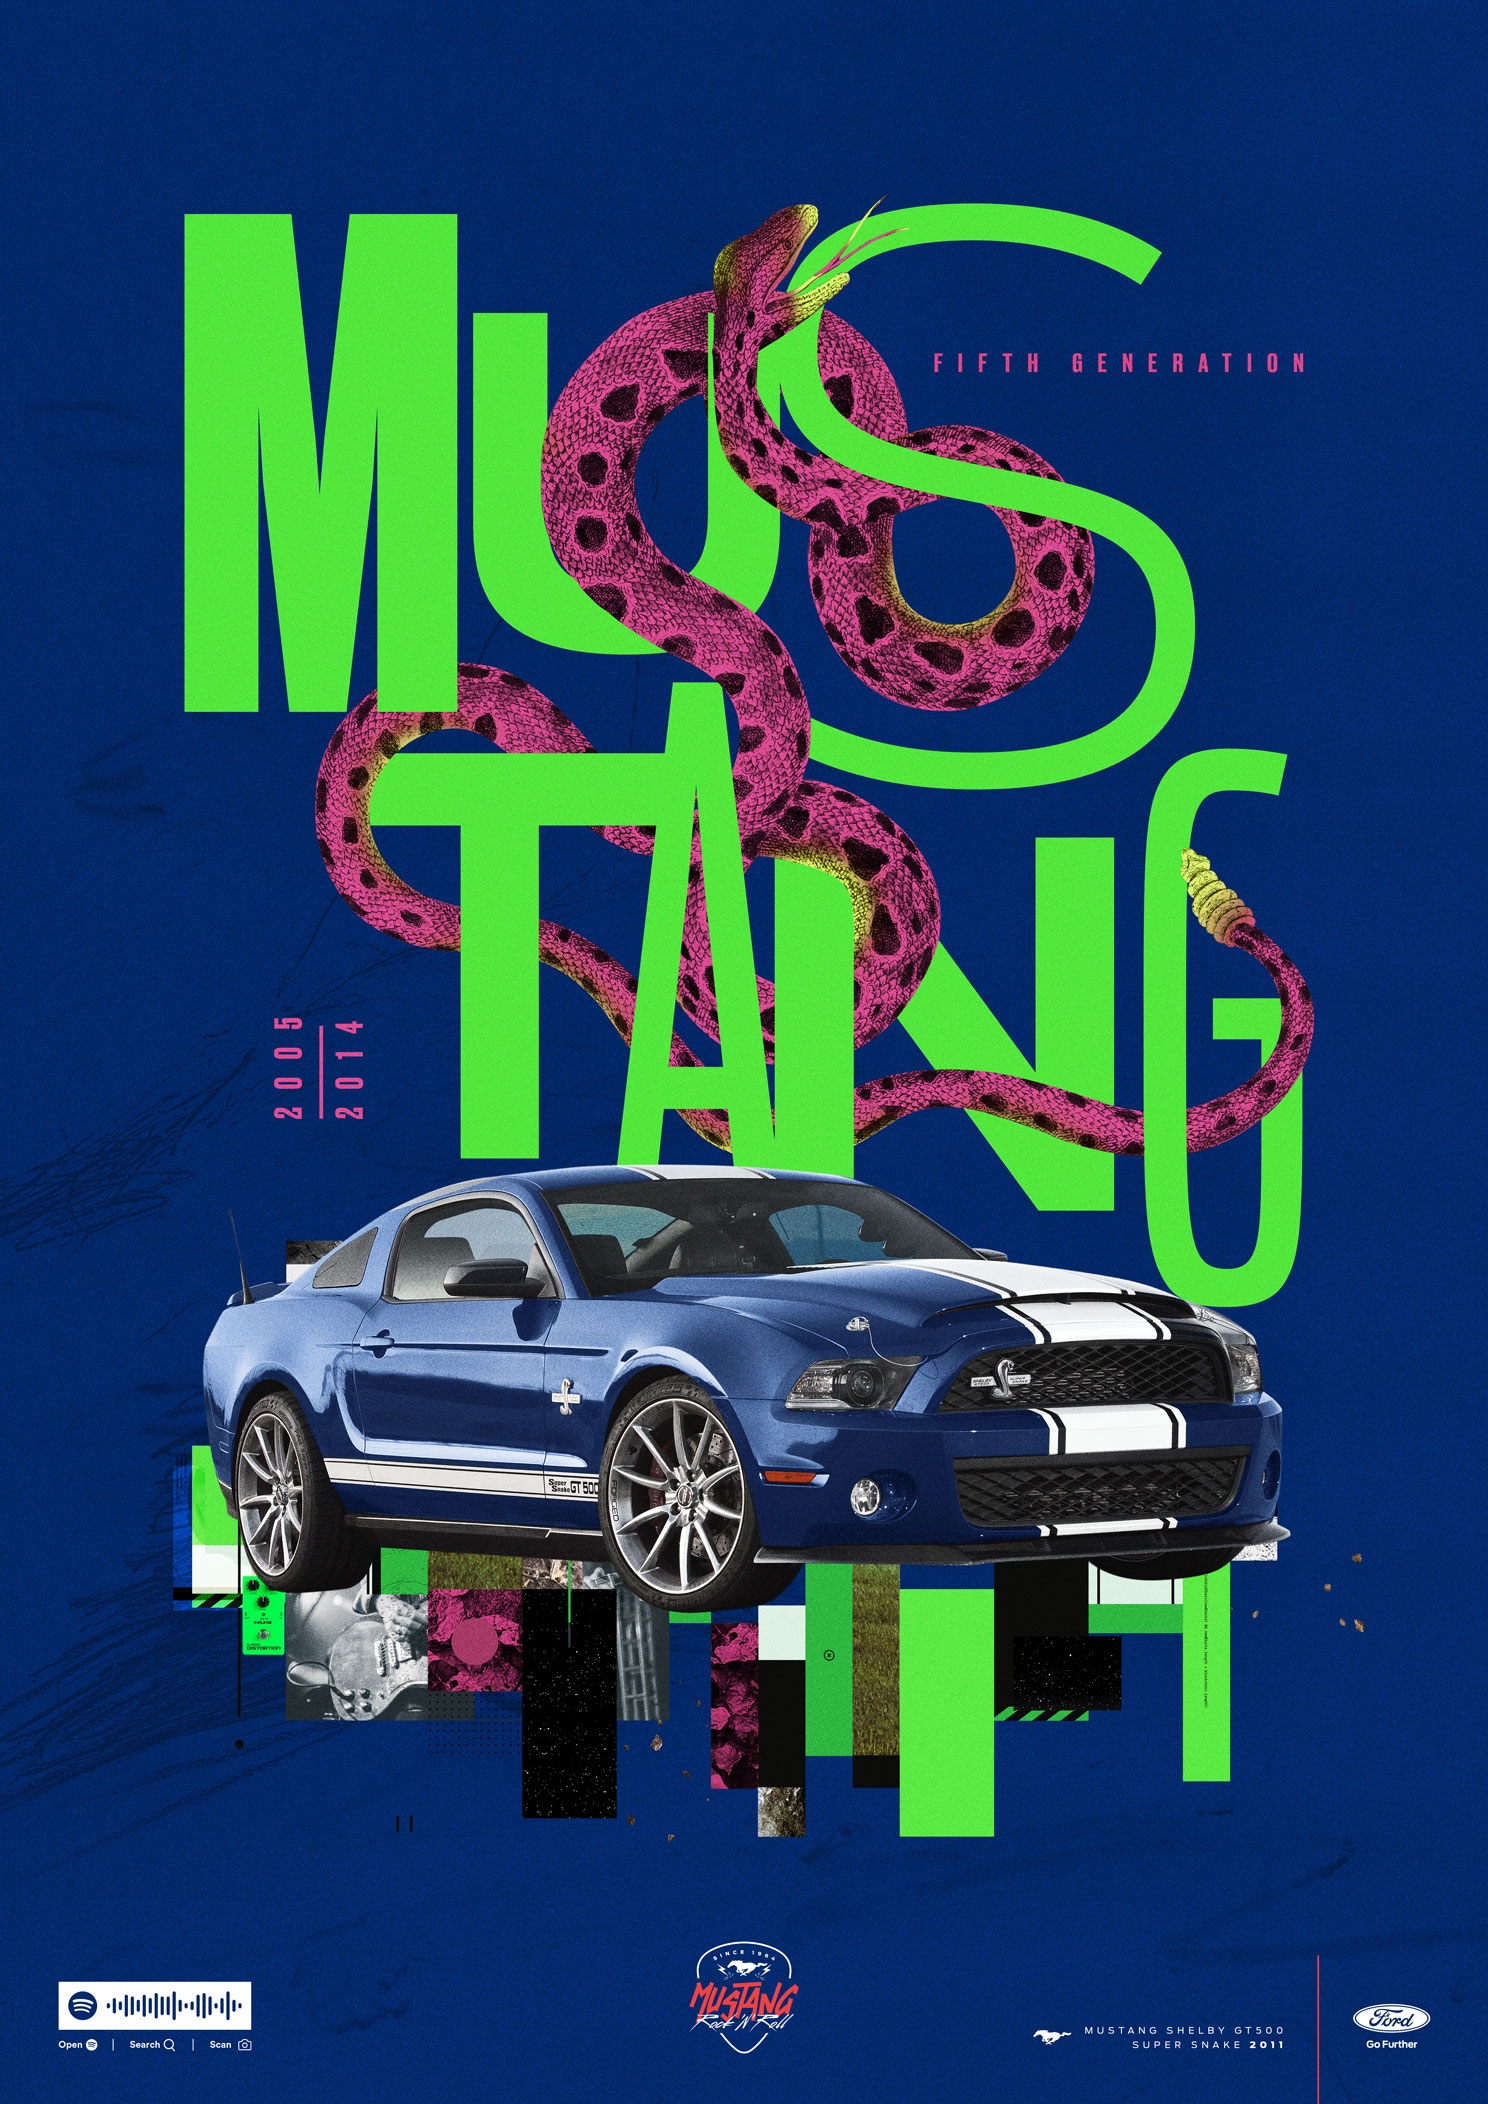 Mustang_Poster_5Generation_EN.jpg